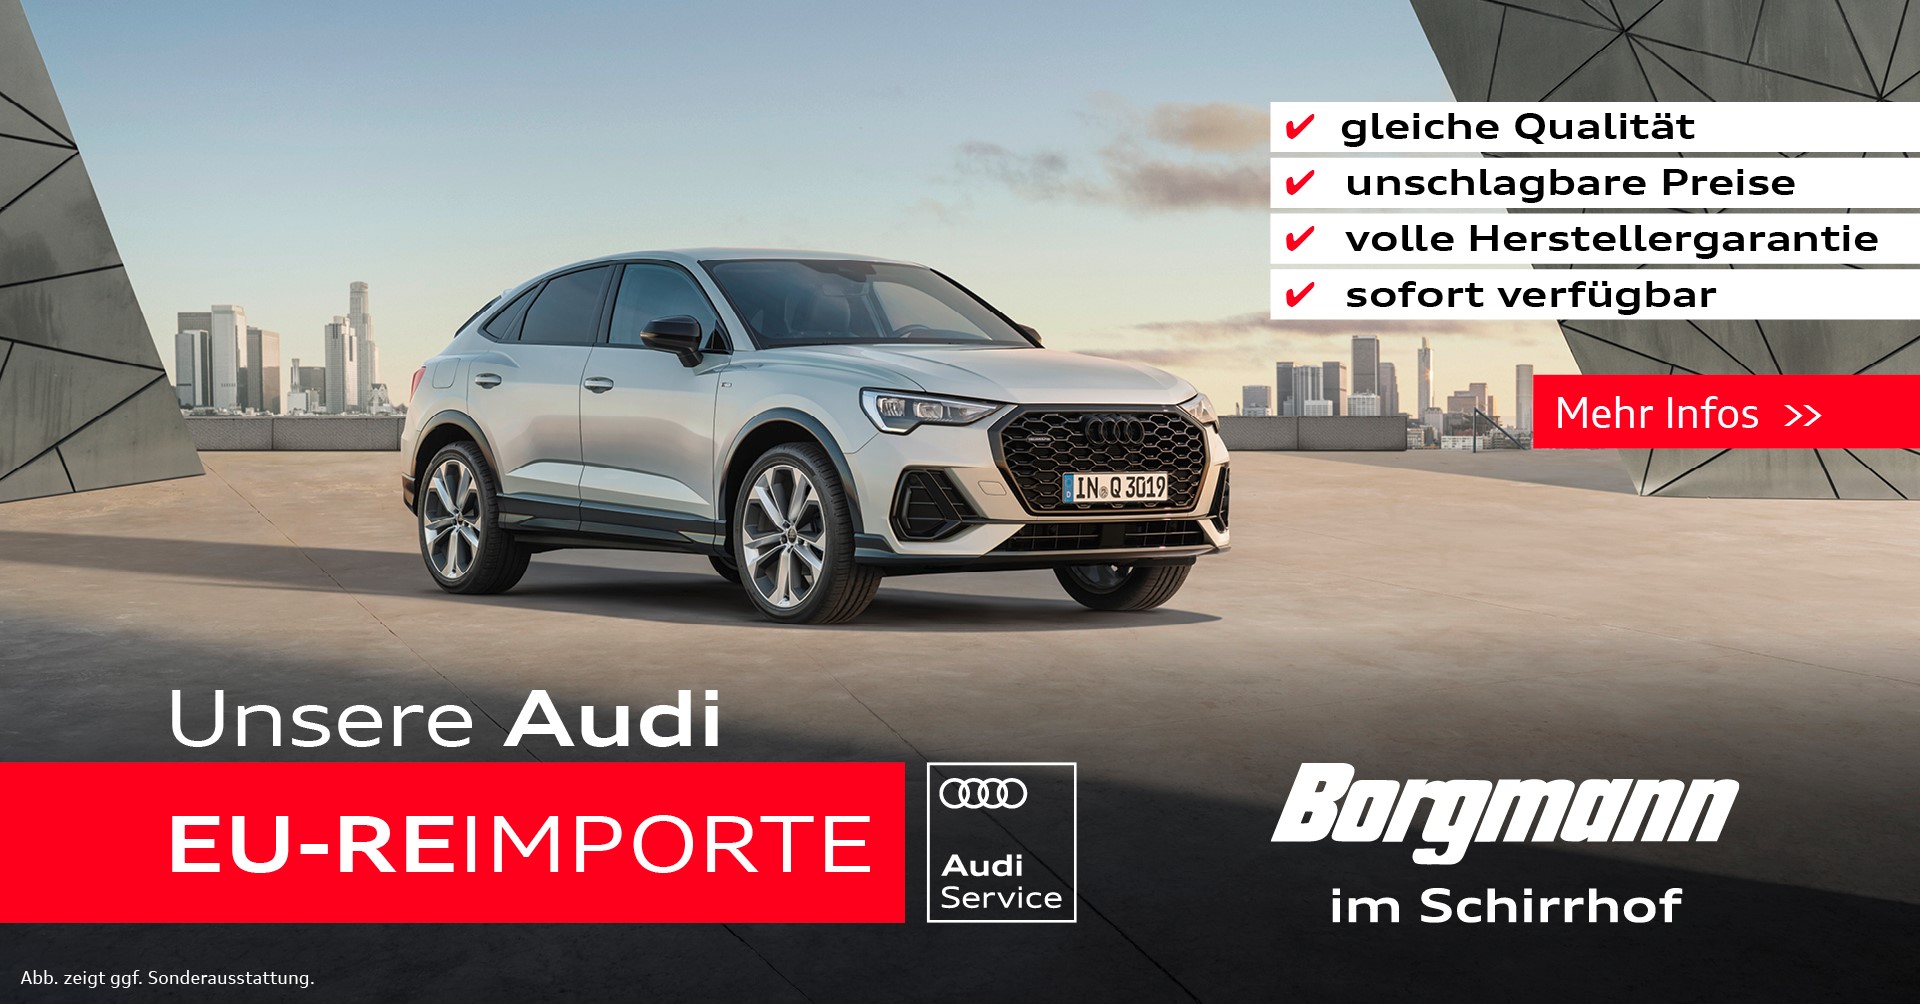 Audi EU-Reimporte